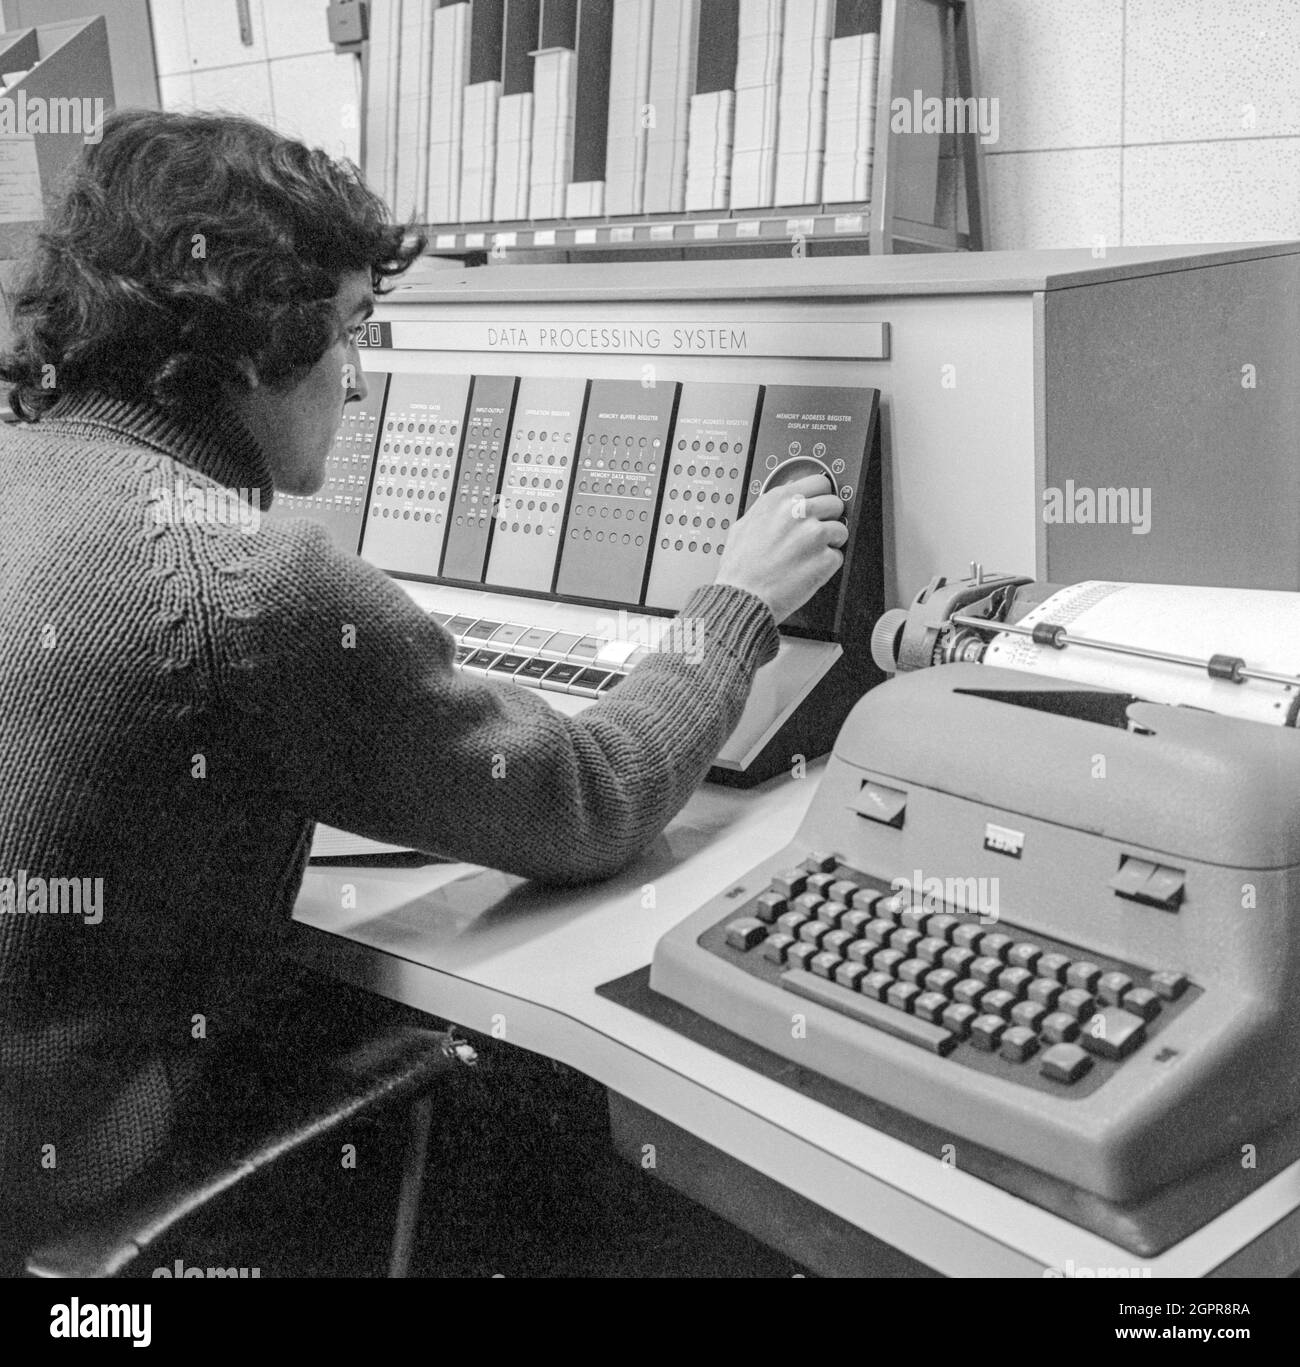 Estudiante de la Universidad Politécnica de Regent Street (ahora Universidad de Westminster) que utilizó un sistema de procesamiento de datos IBM 1620 en 1970. Foto de stock